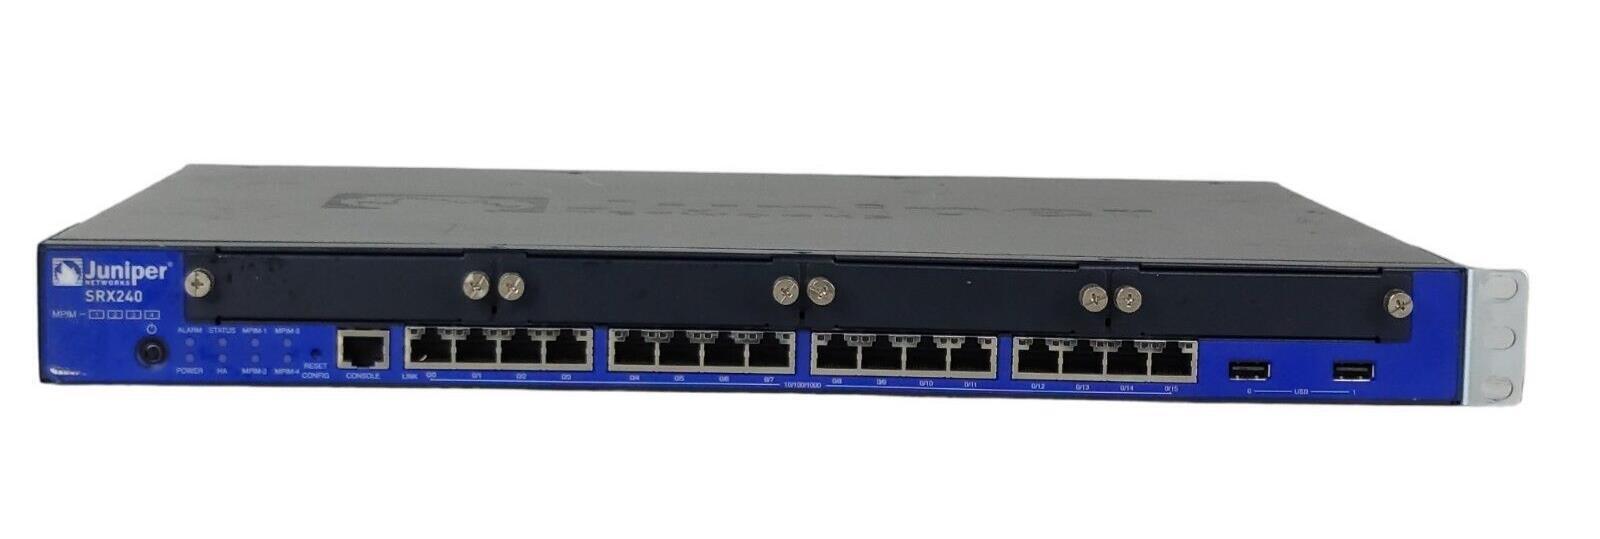 Juniper SRX240 16 Port Services Gateway Firewall